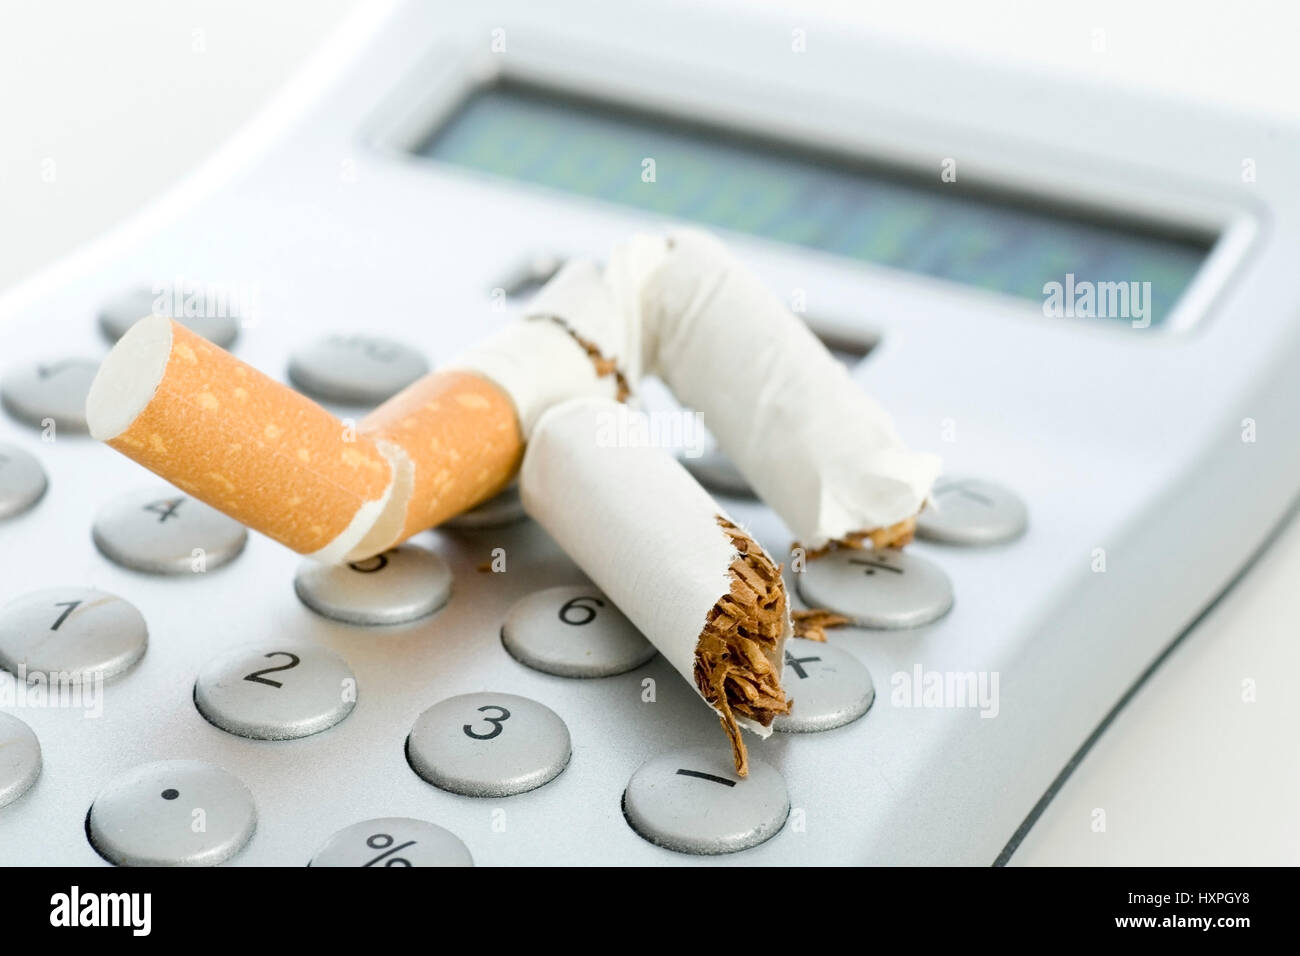 expressed cigarette on a pocket calculator, ausgedrückte Zigarette auf einem Taschenrechner Stock Photo